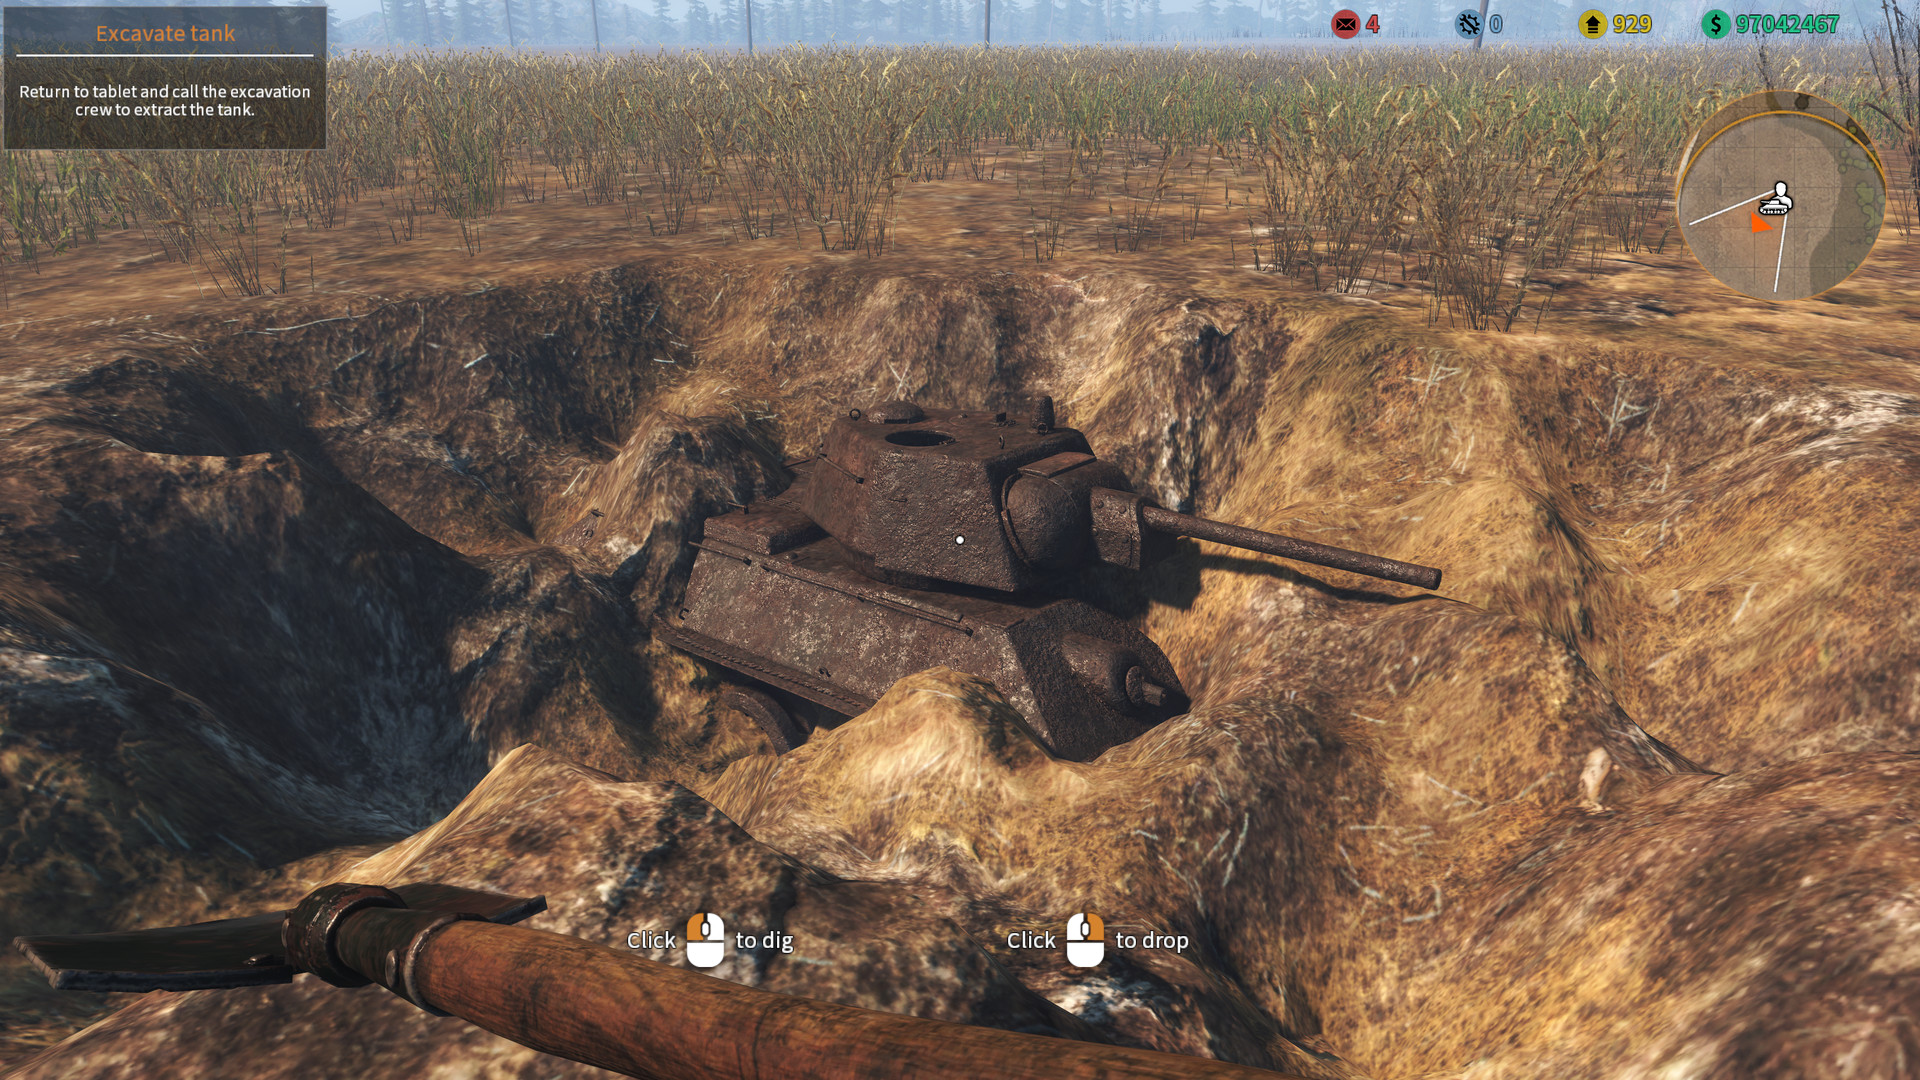 供以人员修理苏联坦克T-34一个减少的模型 库存照片. 图片 包括有 坦克, 绿色, 业余爱好, 次幂, 历史 - 94469802